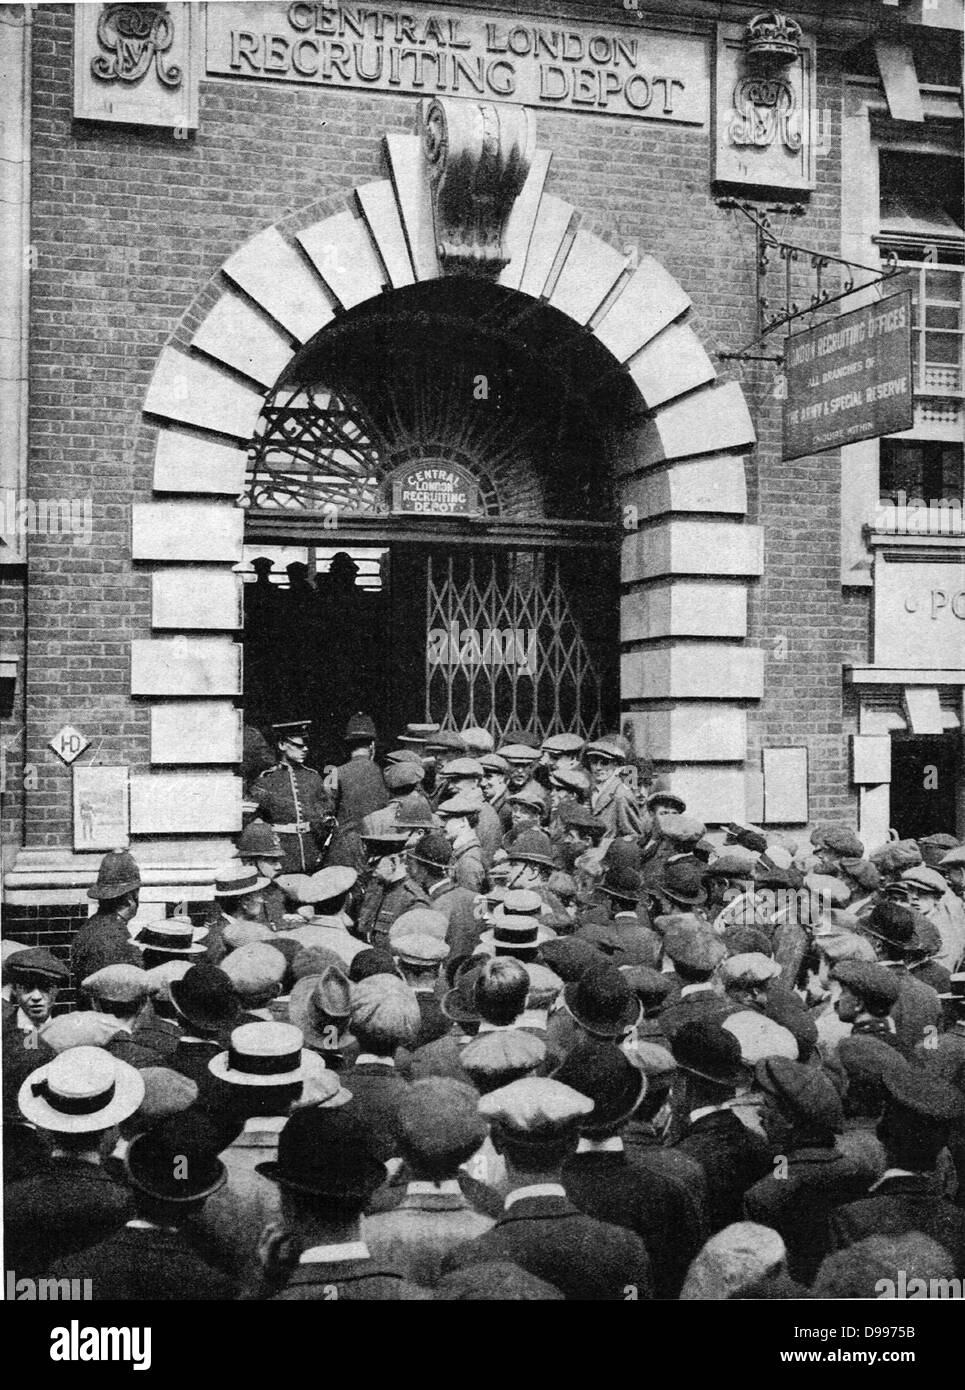 Dépôt de recrutement centre de Londres pendant la Première Guerre mondiale, 1914 Banque D'Images